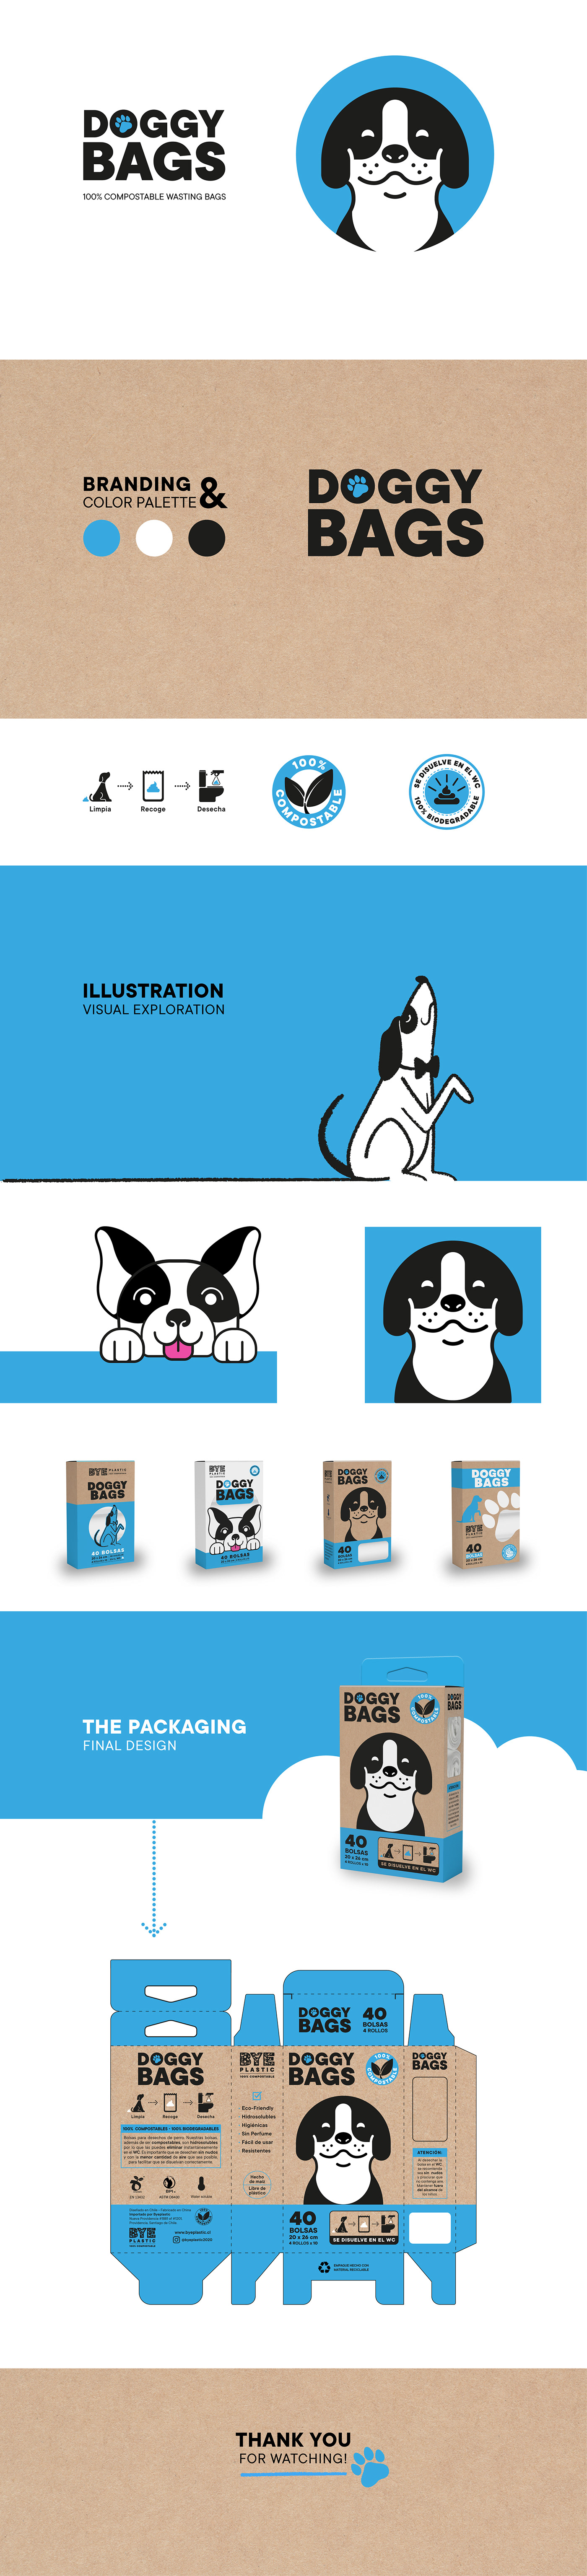 bags blue branding  compostable design dog doggy ILLUSTRATION  Packaging Waste Bag